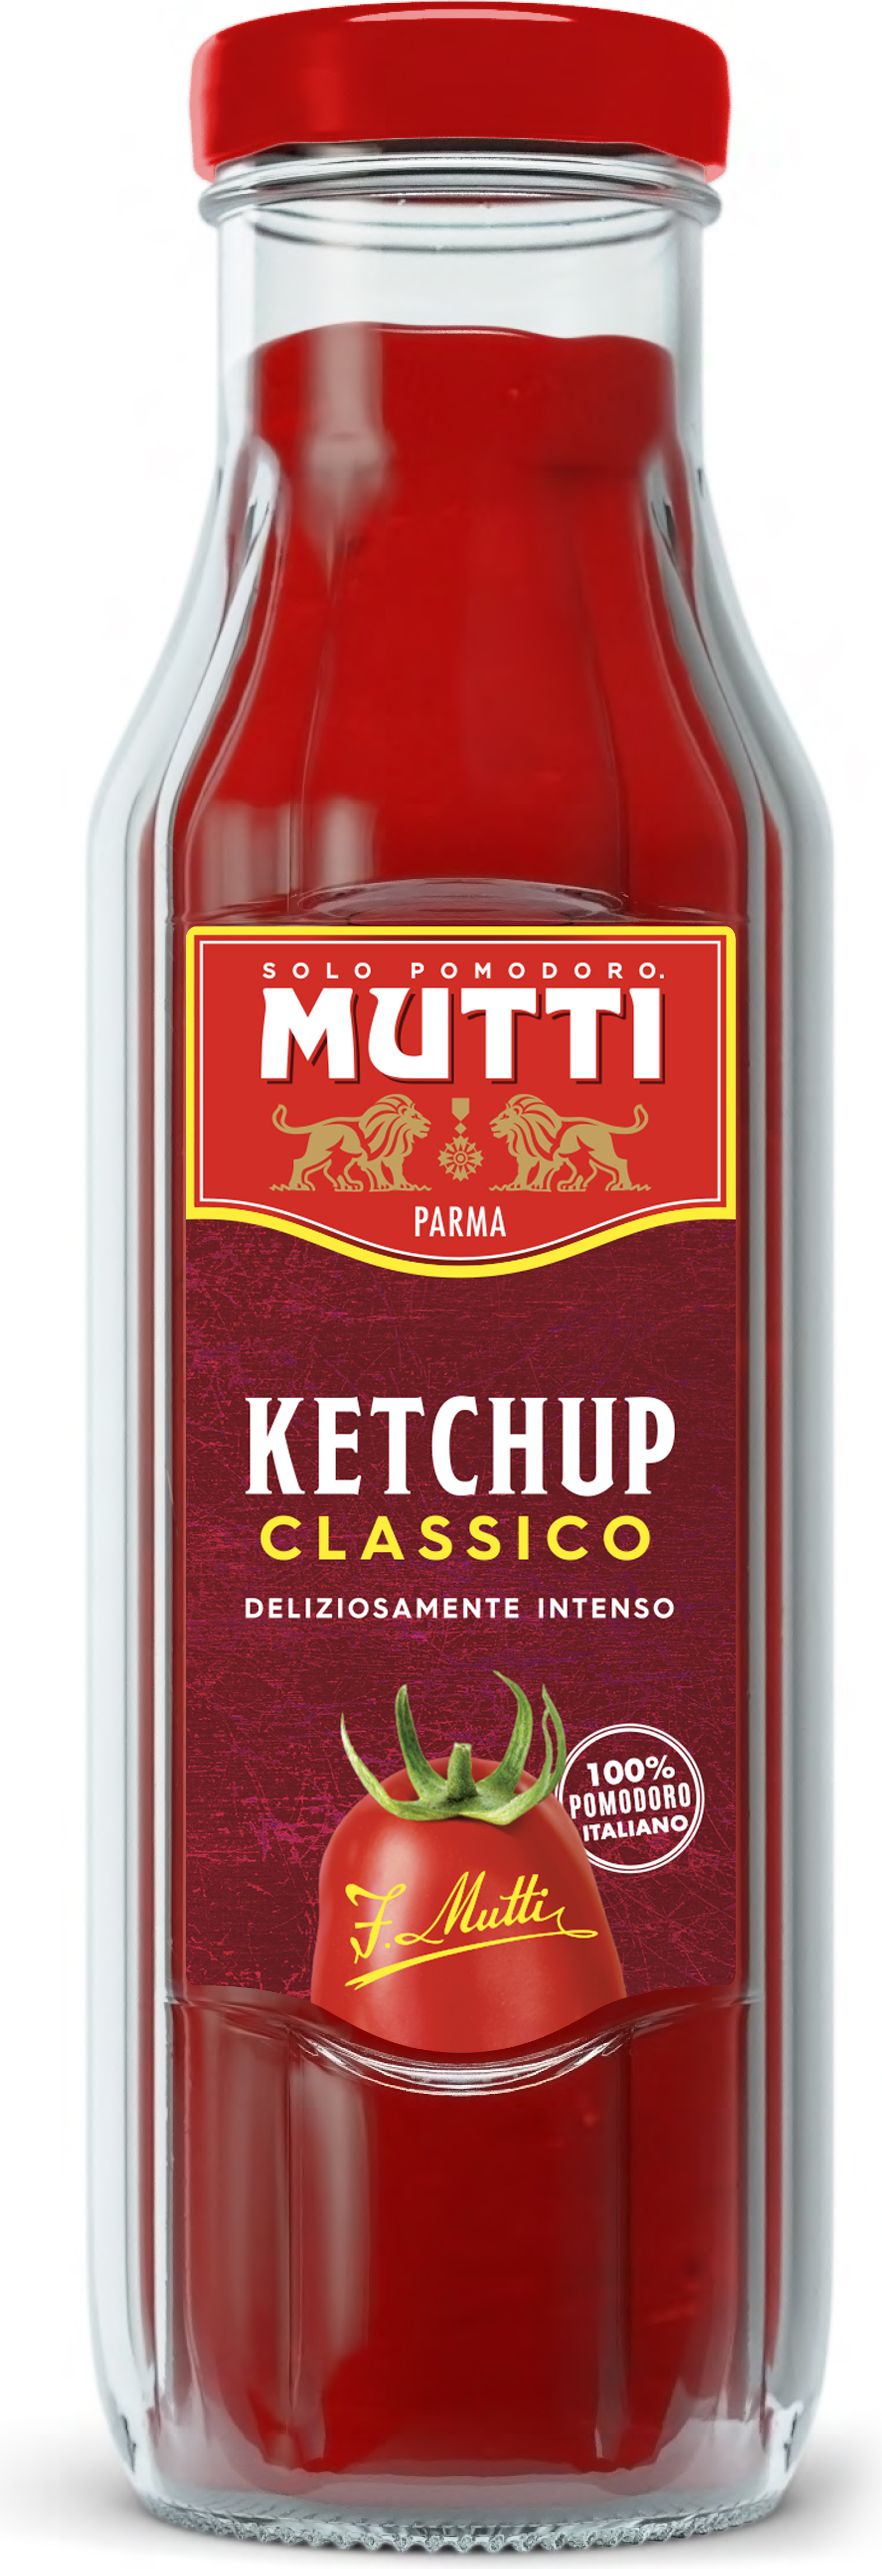 mutti томатный соус для пиццы классический фото 99